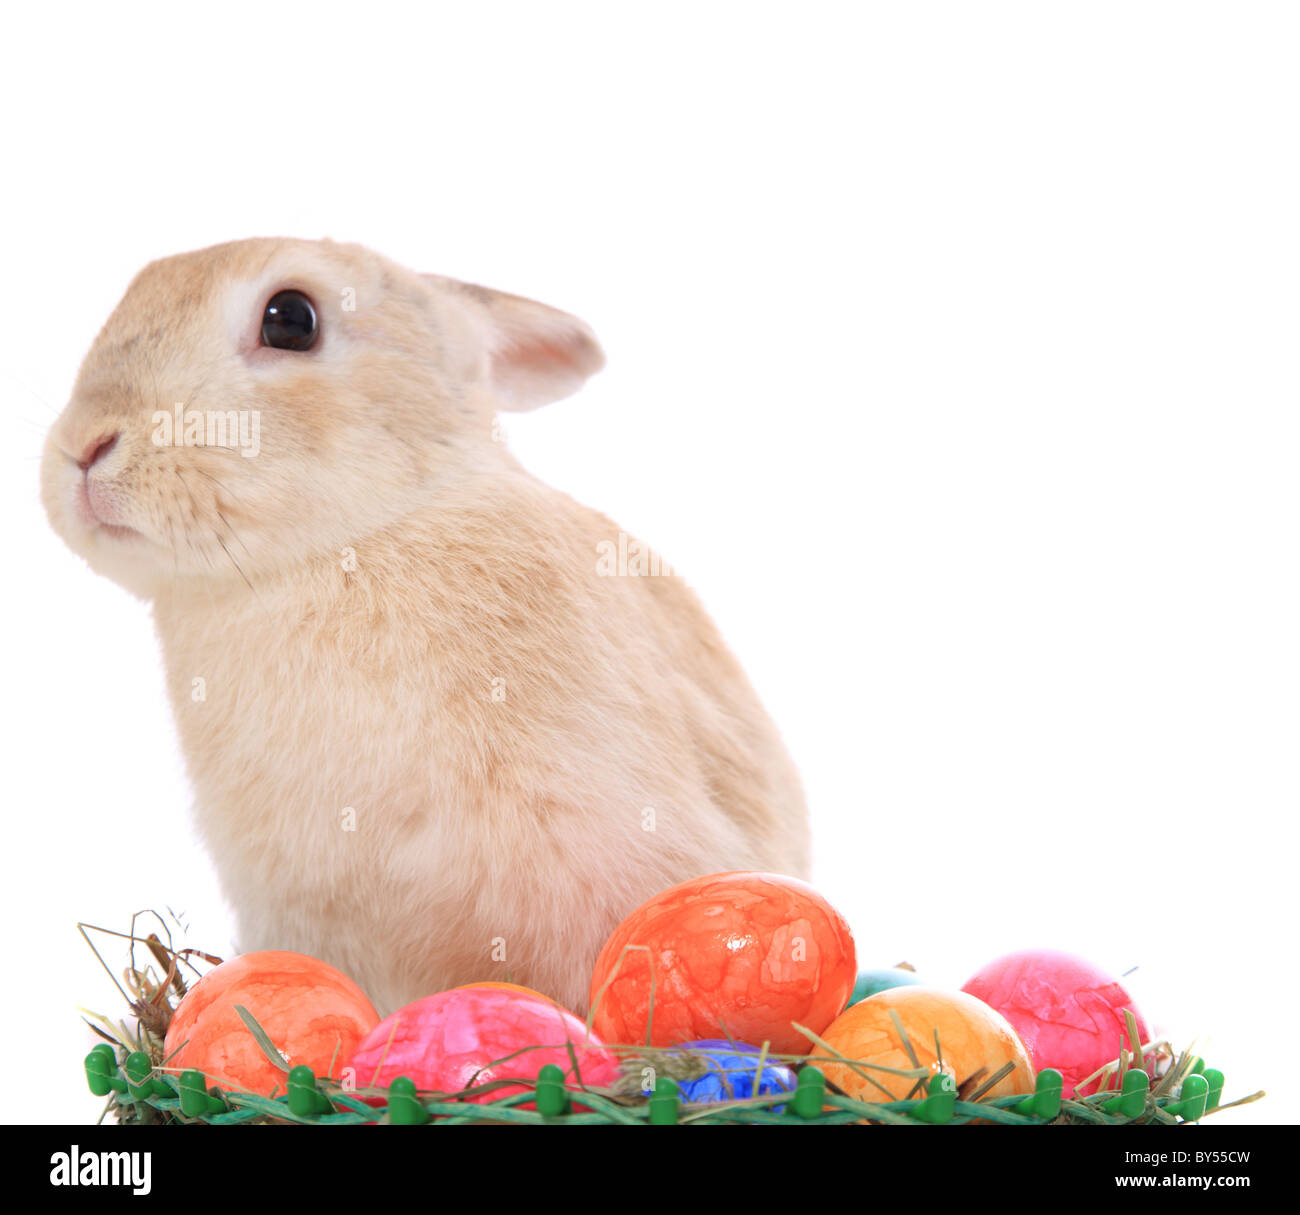 Piccolo grazioso coniglietto di pasqua con uova colorate. Tutto su sfondo bianco. Foto Stock